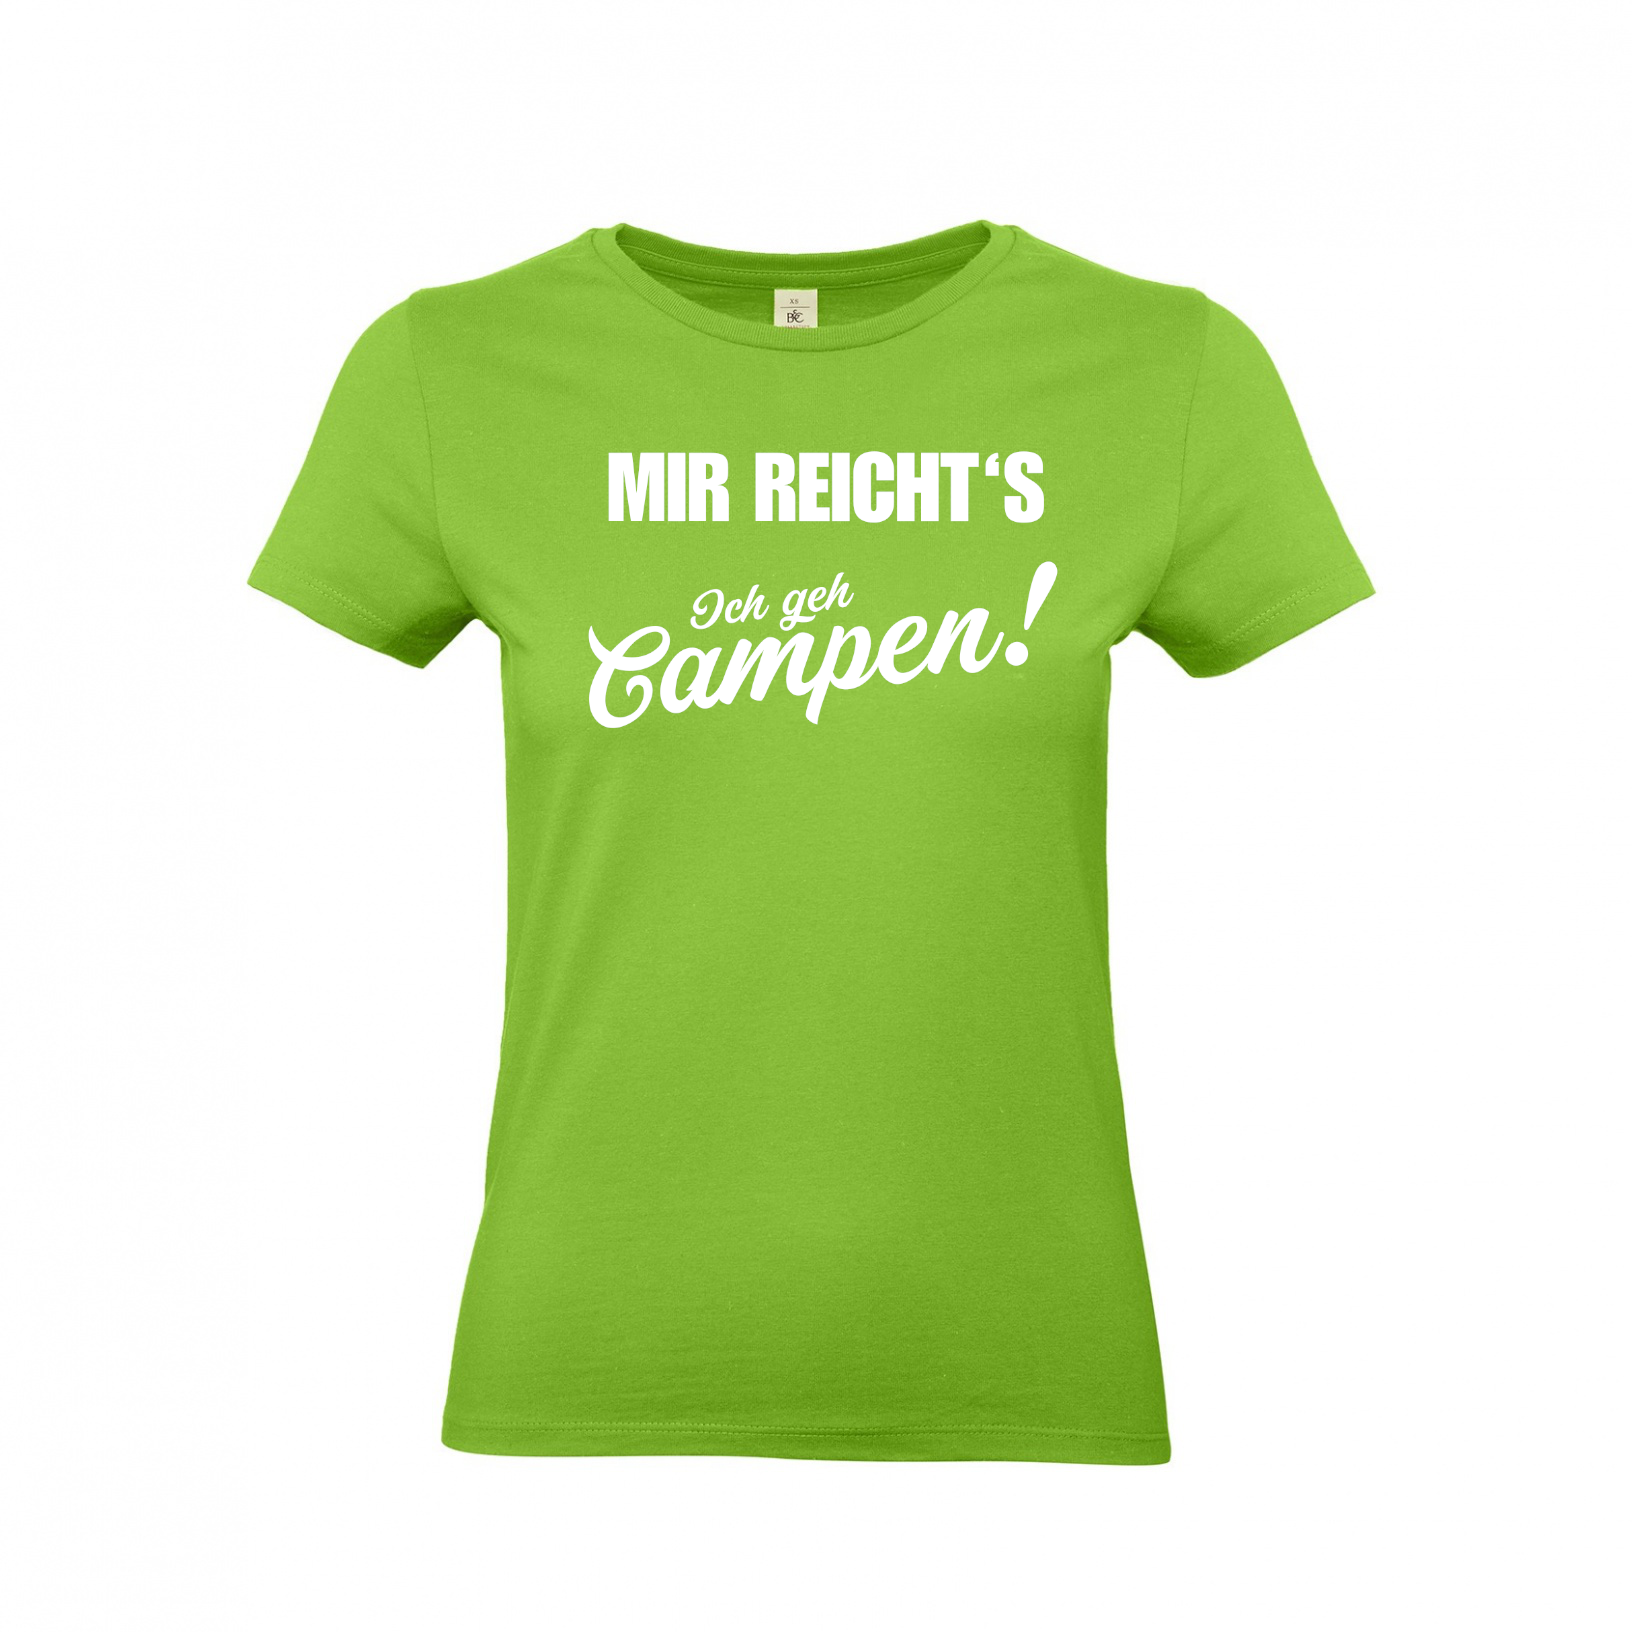 Mir reichts! ich geh campen - Camping T-Shirt für Frauen